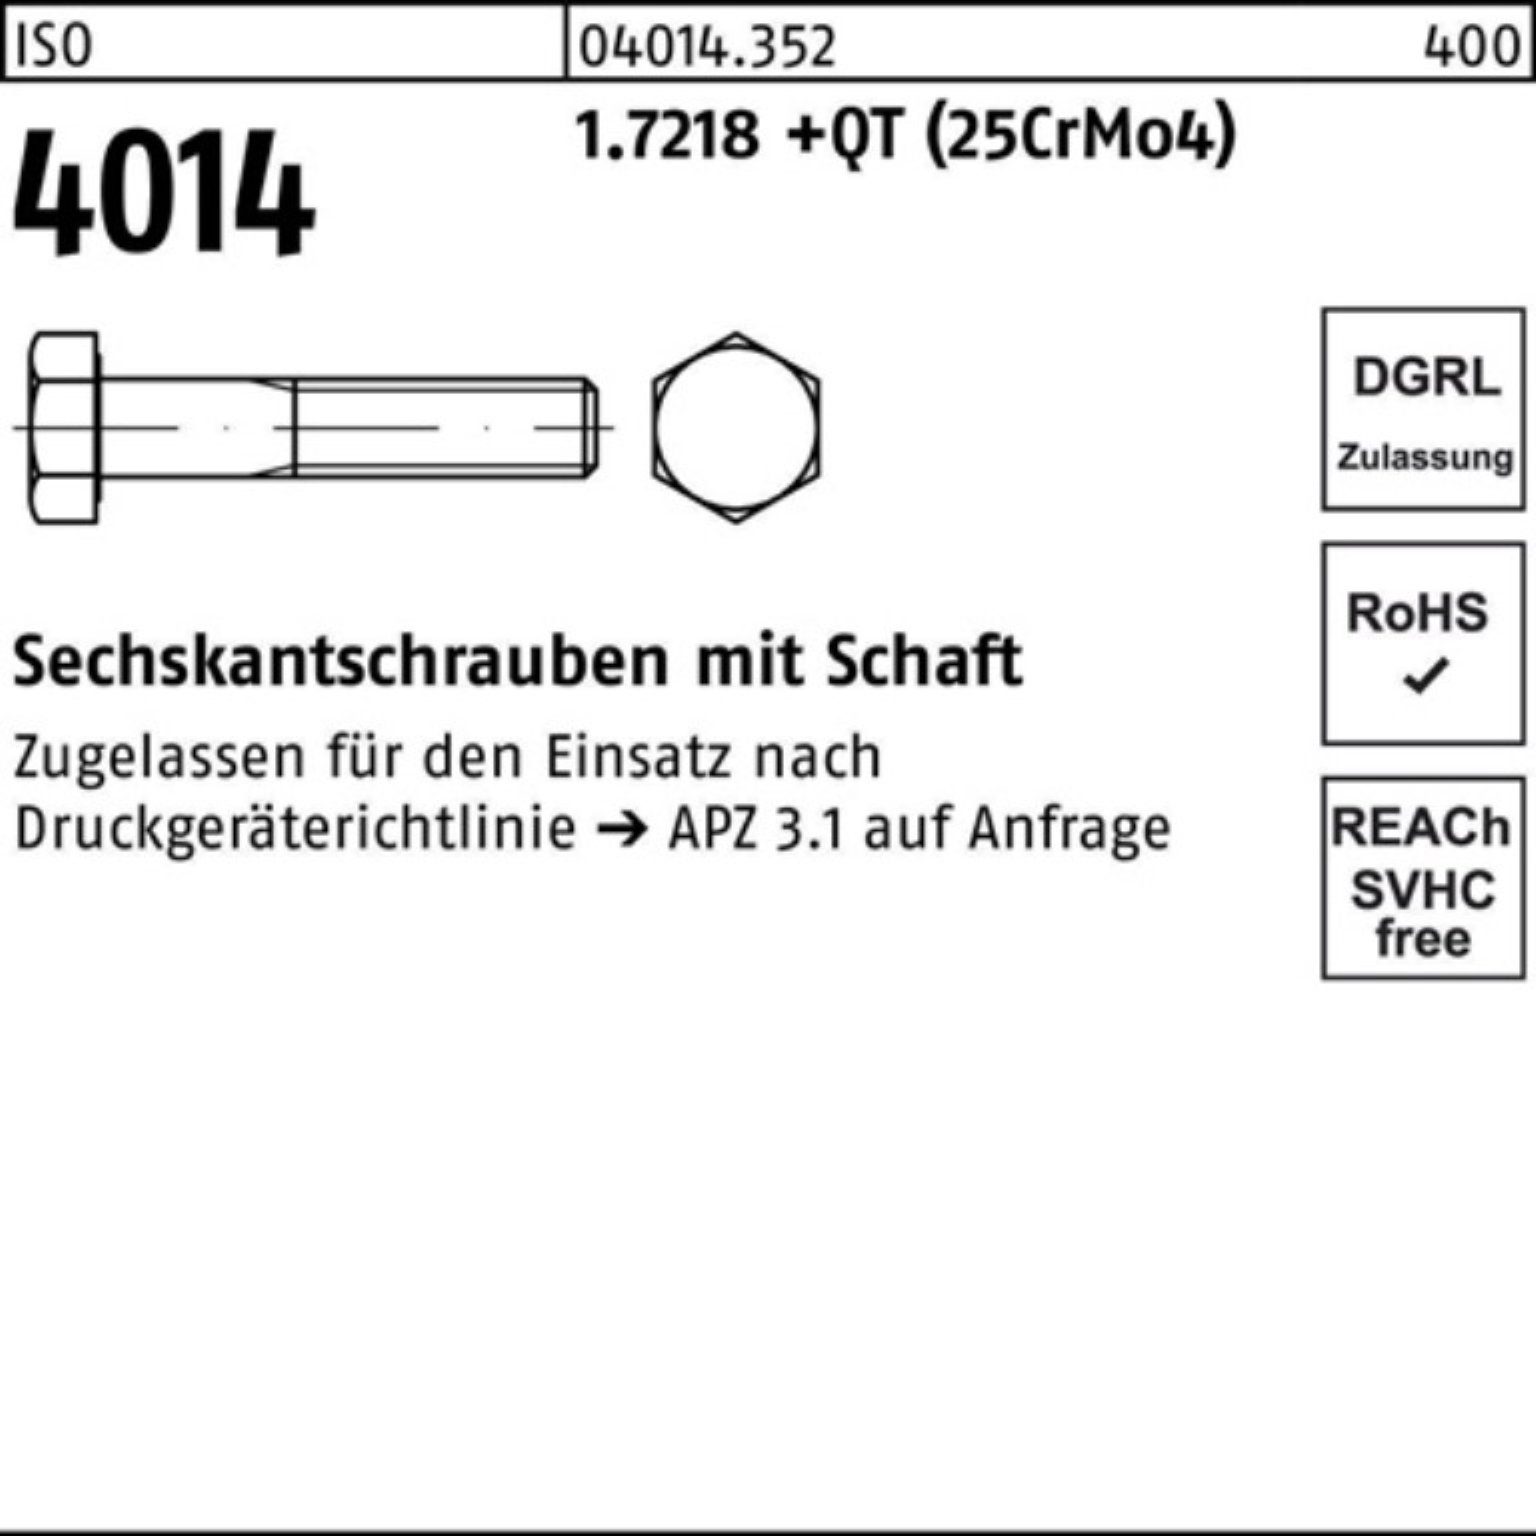 Sechskantschraube 220 (25Cr 1.7218 Sechskantschraube +QT 4014 Pack Bufab ISO 100er Schaft M33x